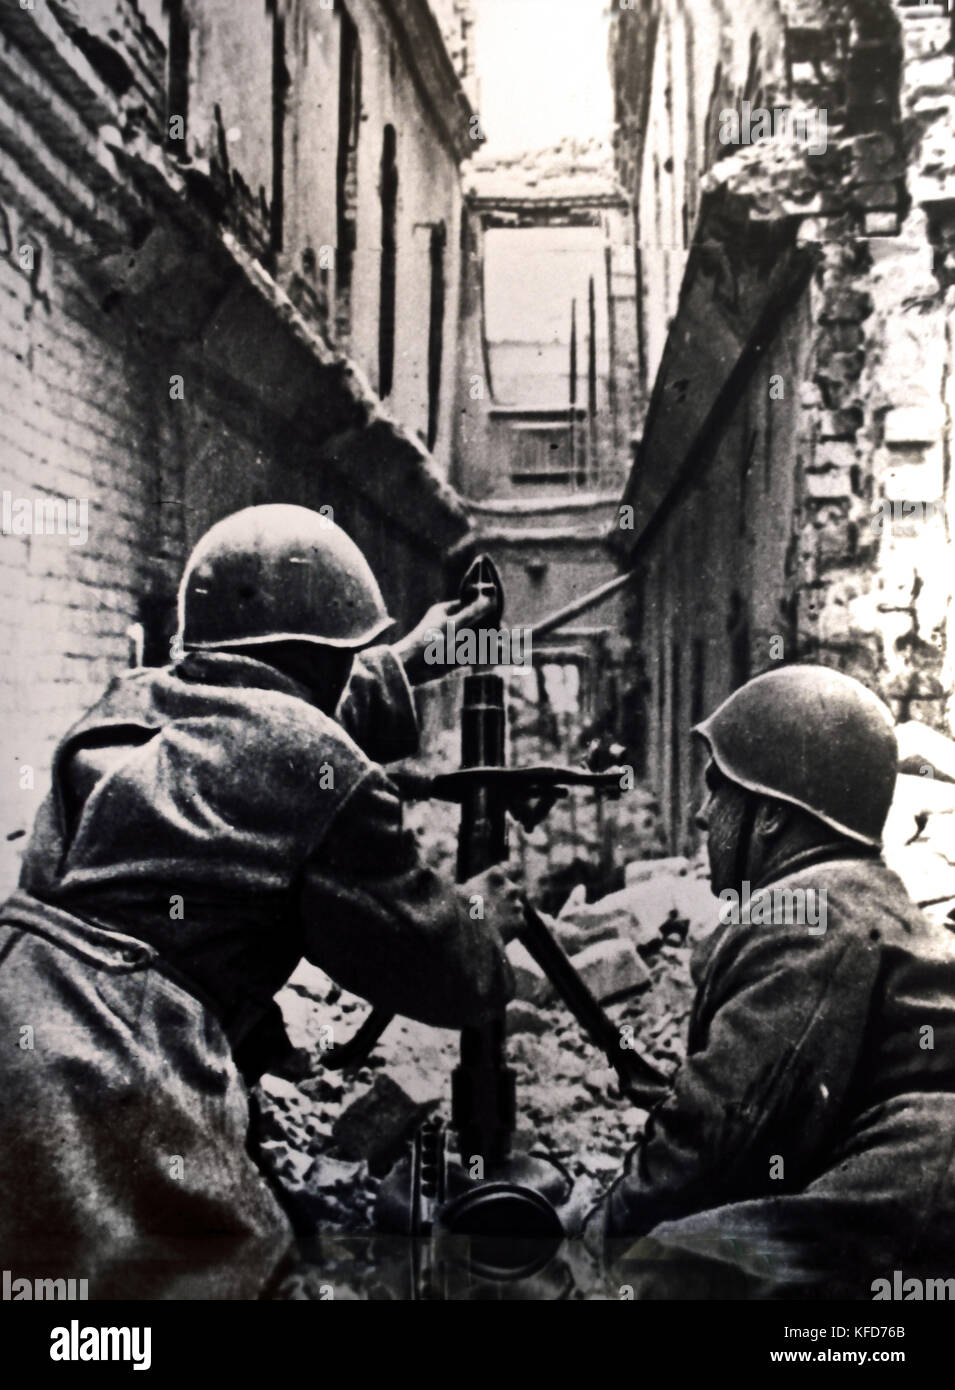 Kämpfe in den Straßen von Stalingrad eine sowjetische Mörtel in Aktion Weltkrieg (die Schlacht von Stalingrad 1942-1943 war eine große Schlacht des Zweiten Weltkriegs, in denen das nationalsozialistische Deutschland und seine Verbündeten der Sowjetunion für die Kontrolle über die Stadt von Stalingrad gekämpft) Stockfoto